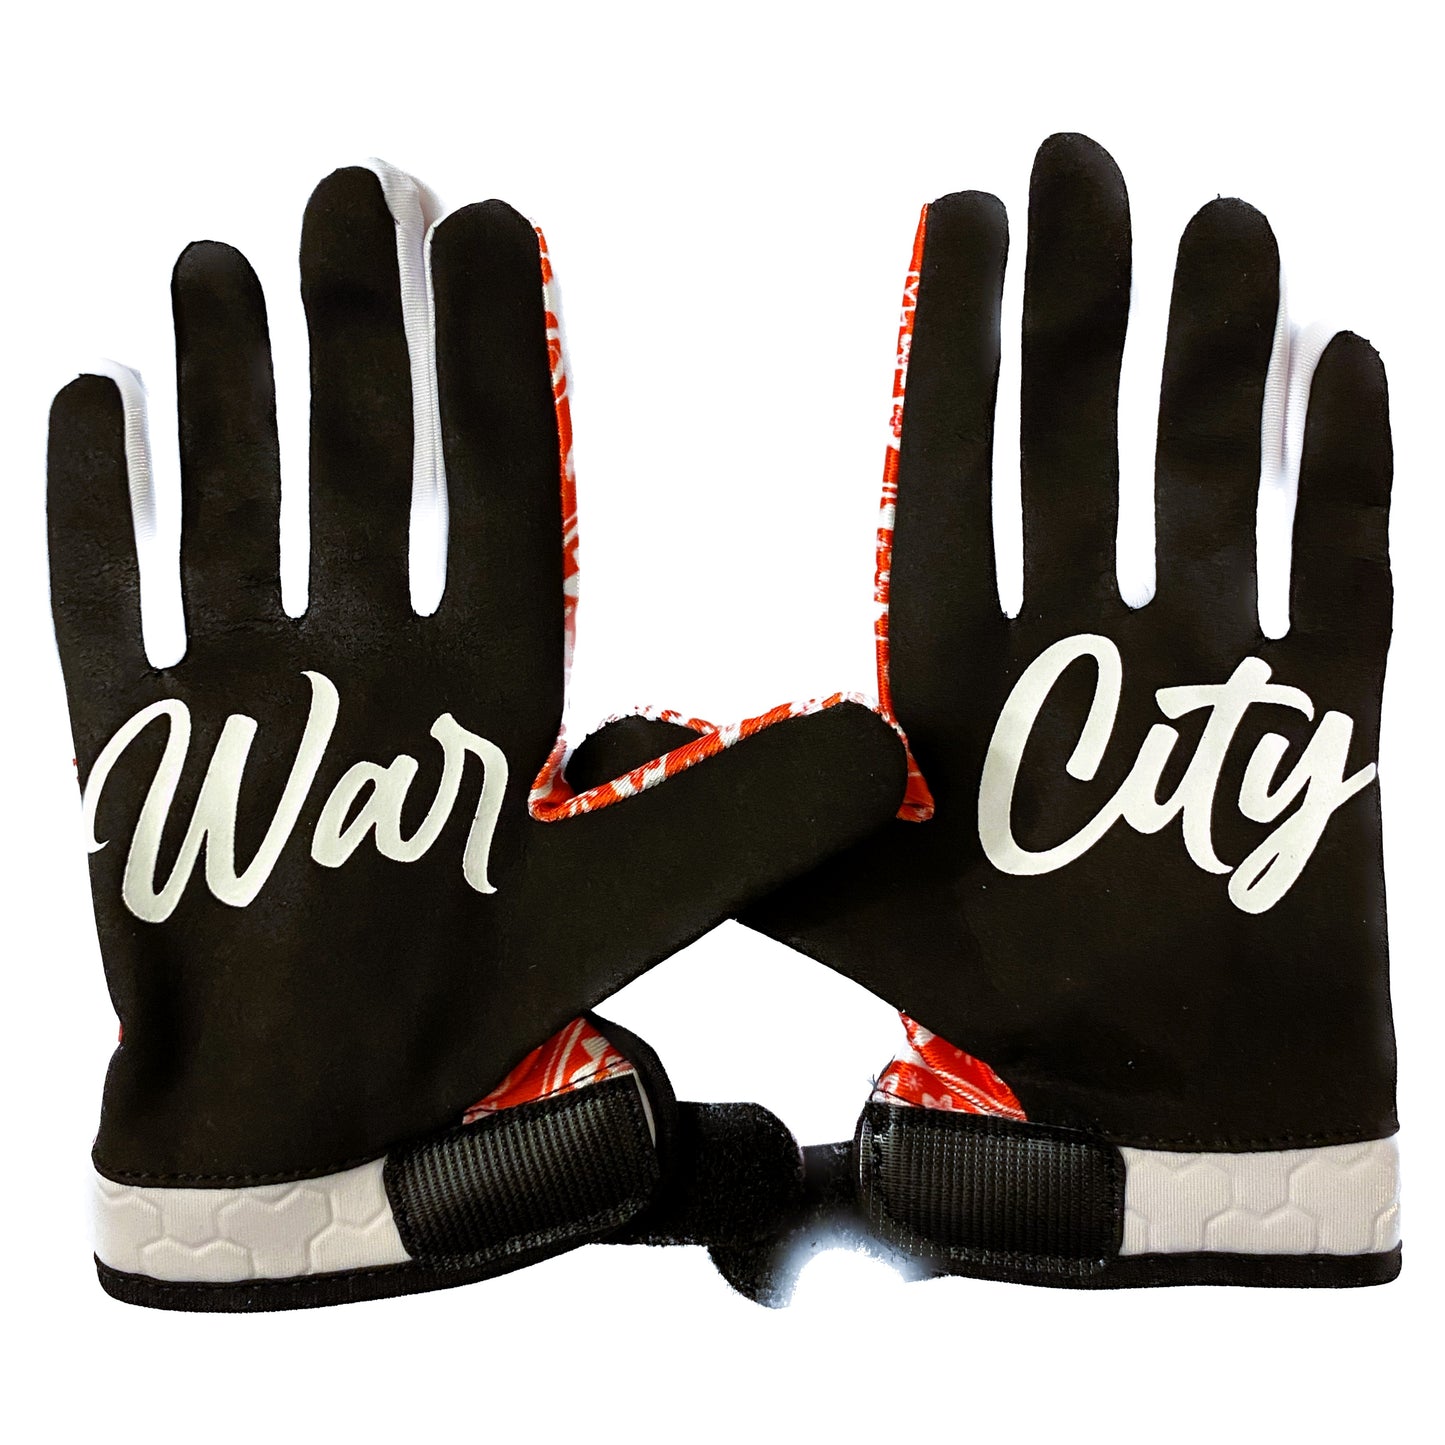 Support 81 Charleston Gloves